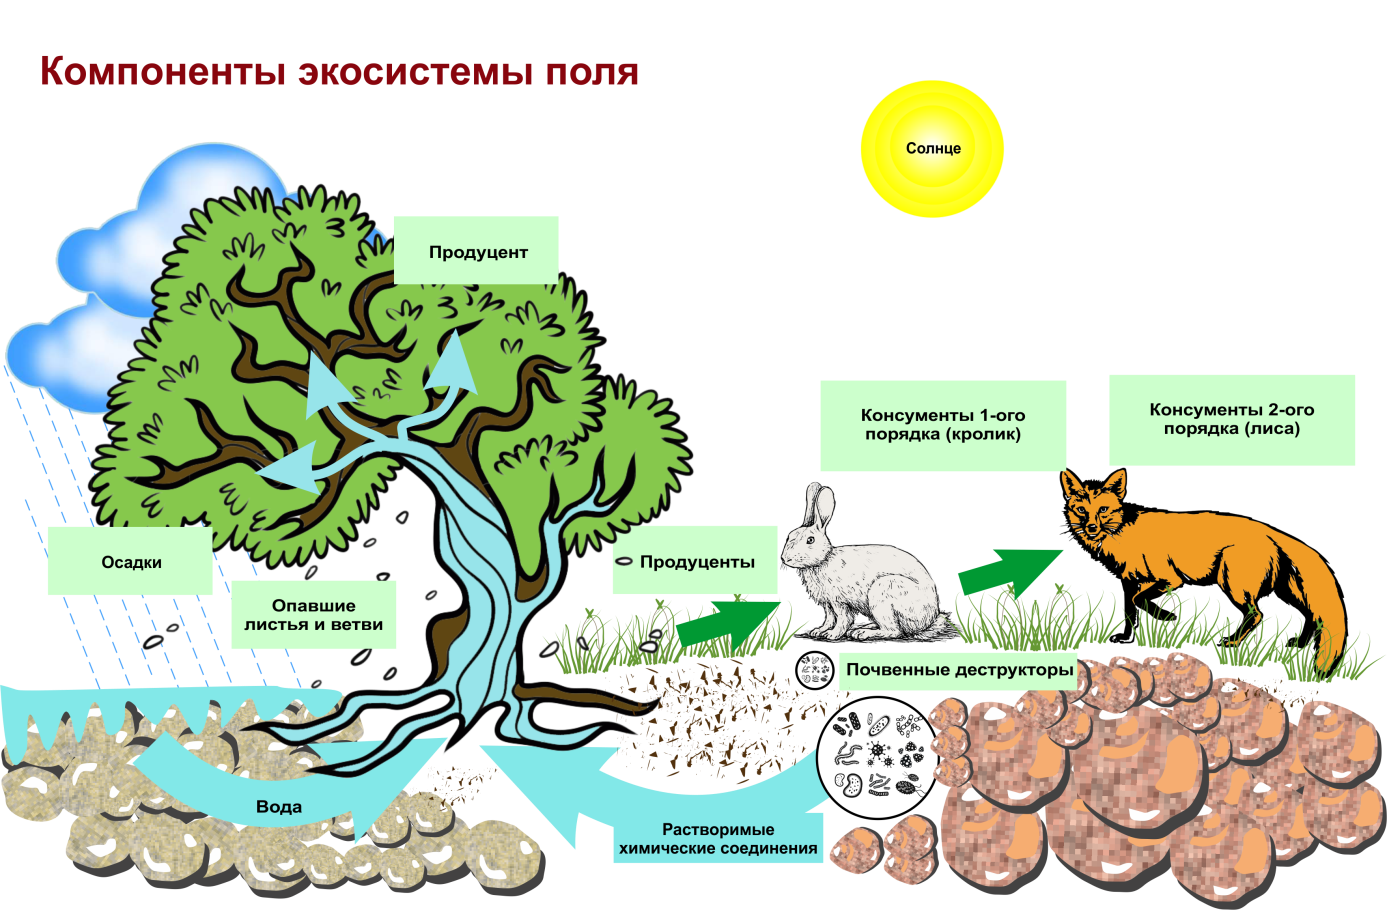 В естественной экосистеме круговорот веществ. Структура биогеоценоза и экосистемы. Схема трофической структуры биоценоза широколиственного леса. Строение биогеоценоза экосистемы. Схема состава компонентов экосистемы.